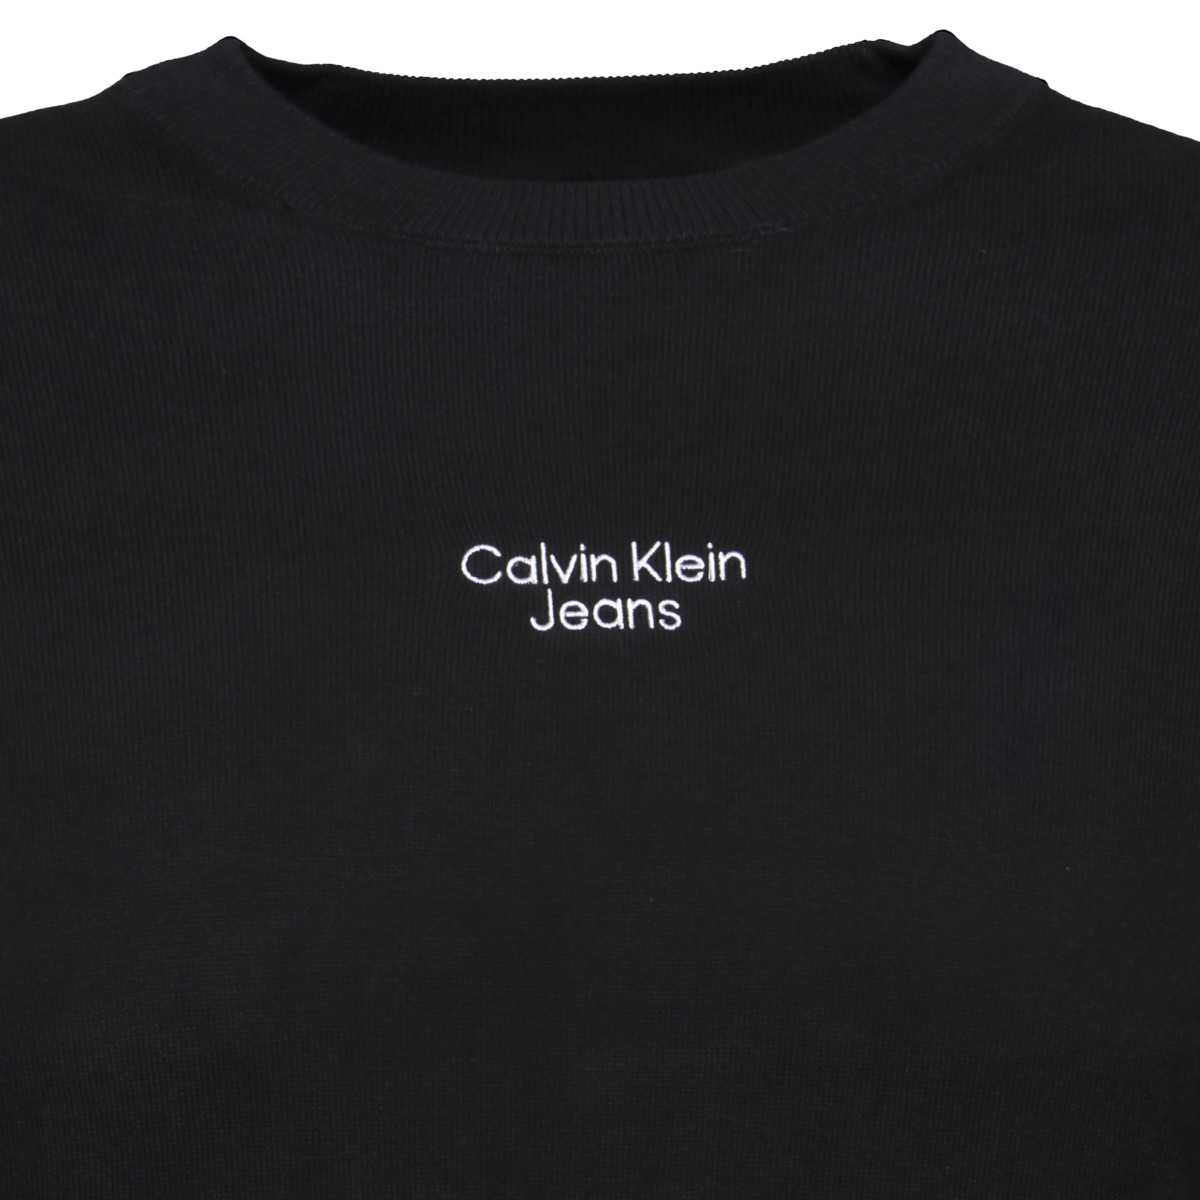 Calvin Klein Jeans Stacked Logo Crew Neck Sweatshirt schwarz